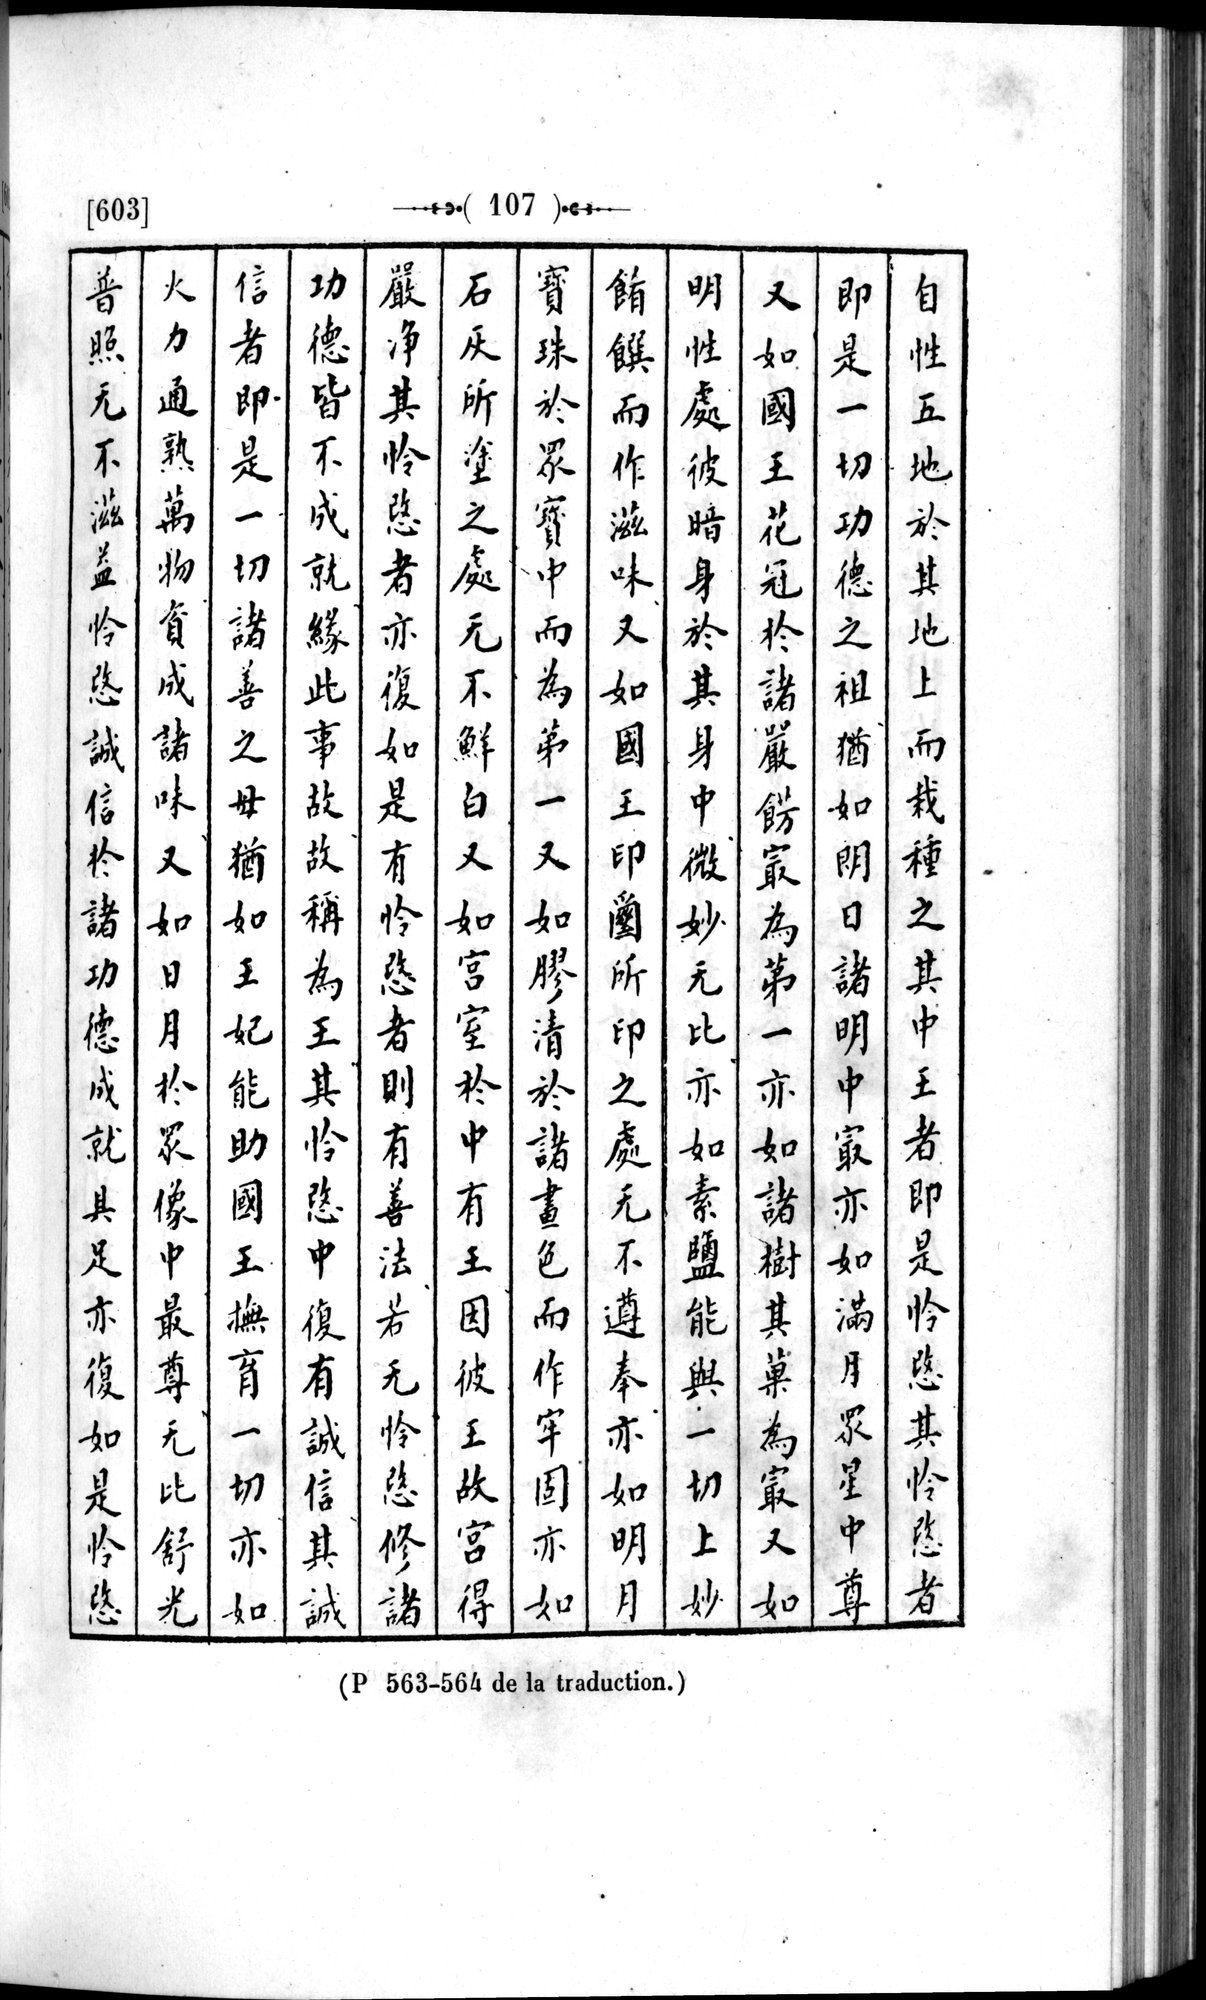 Un traité manichéen retrouvé en Chine : vol.1 / Page 117 (Grayscale High Resolution Image)